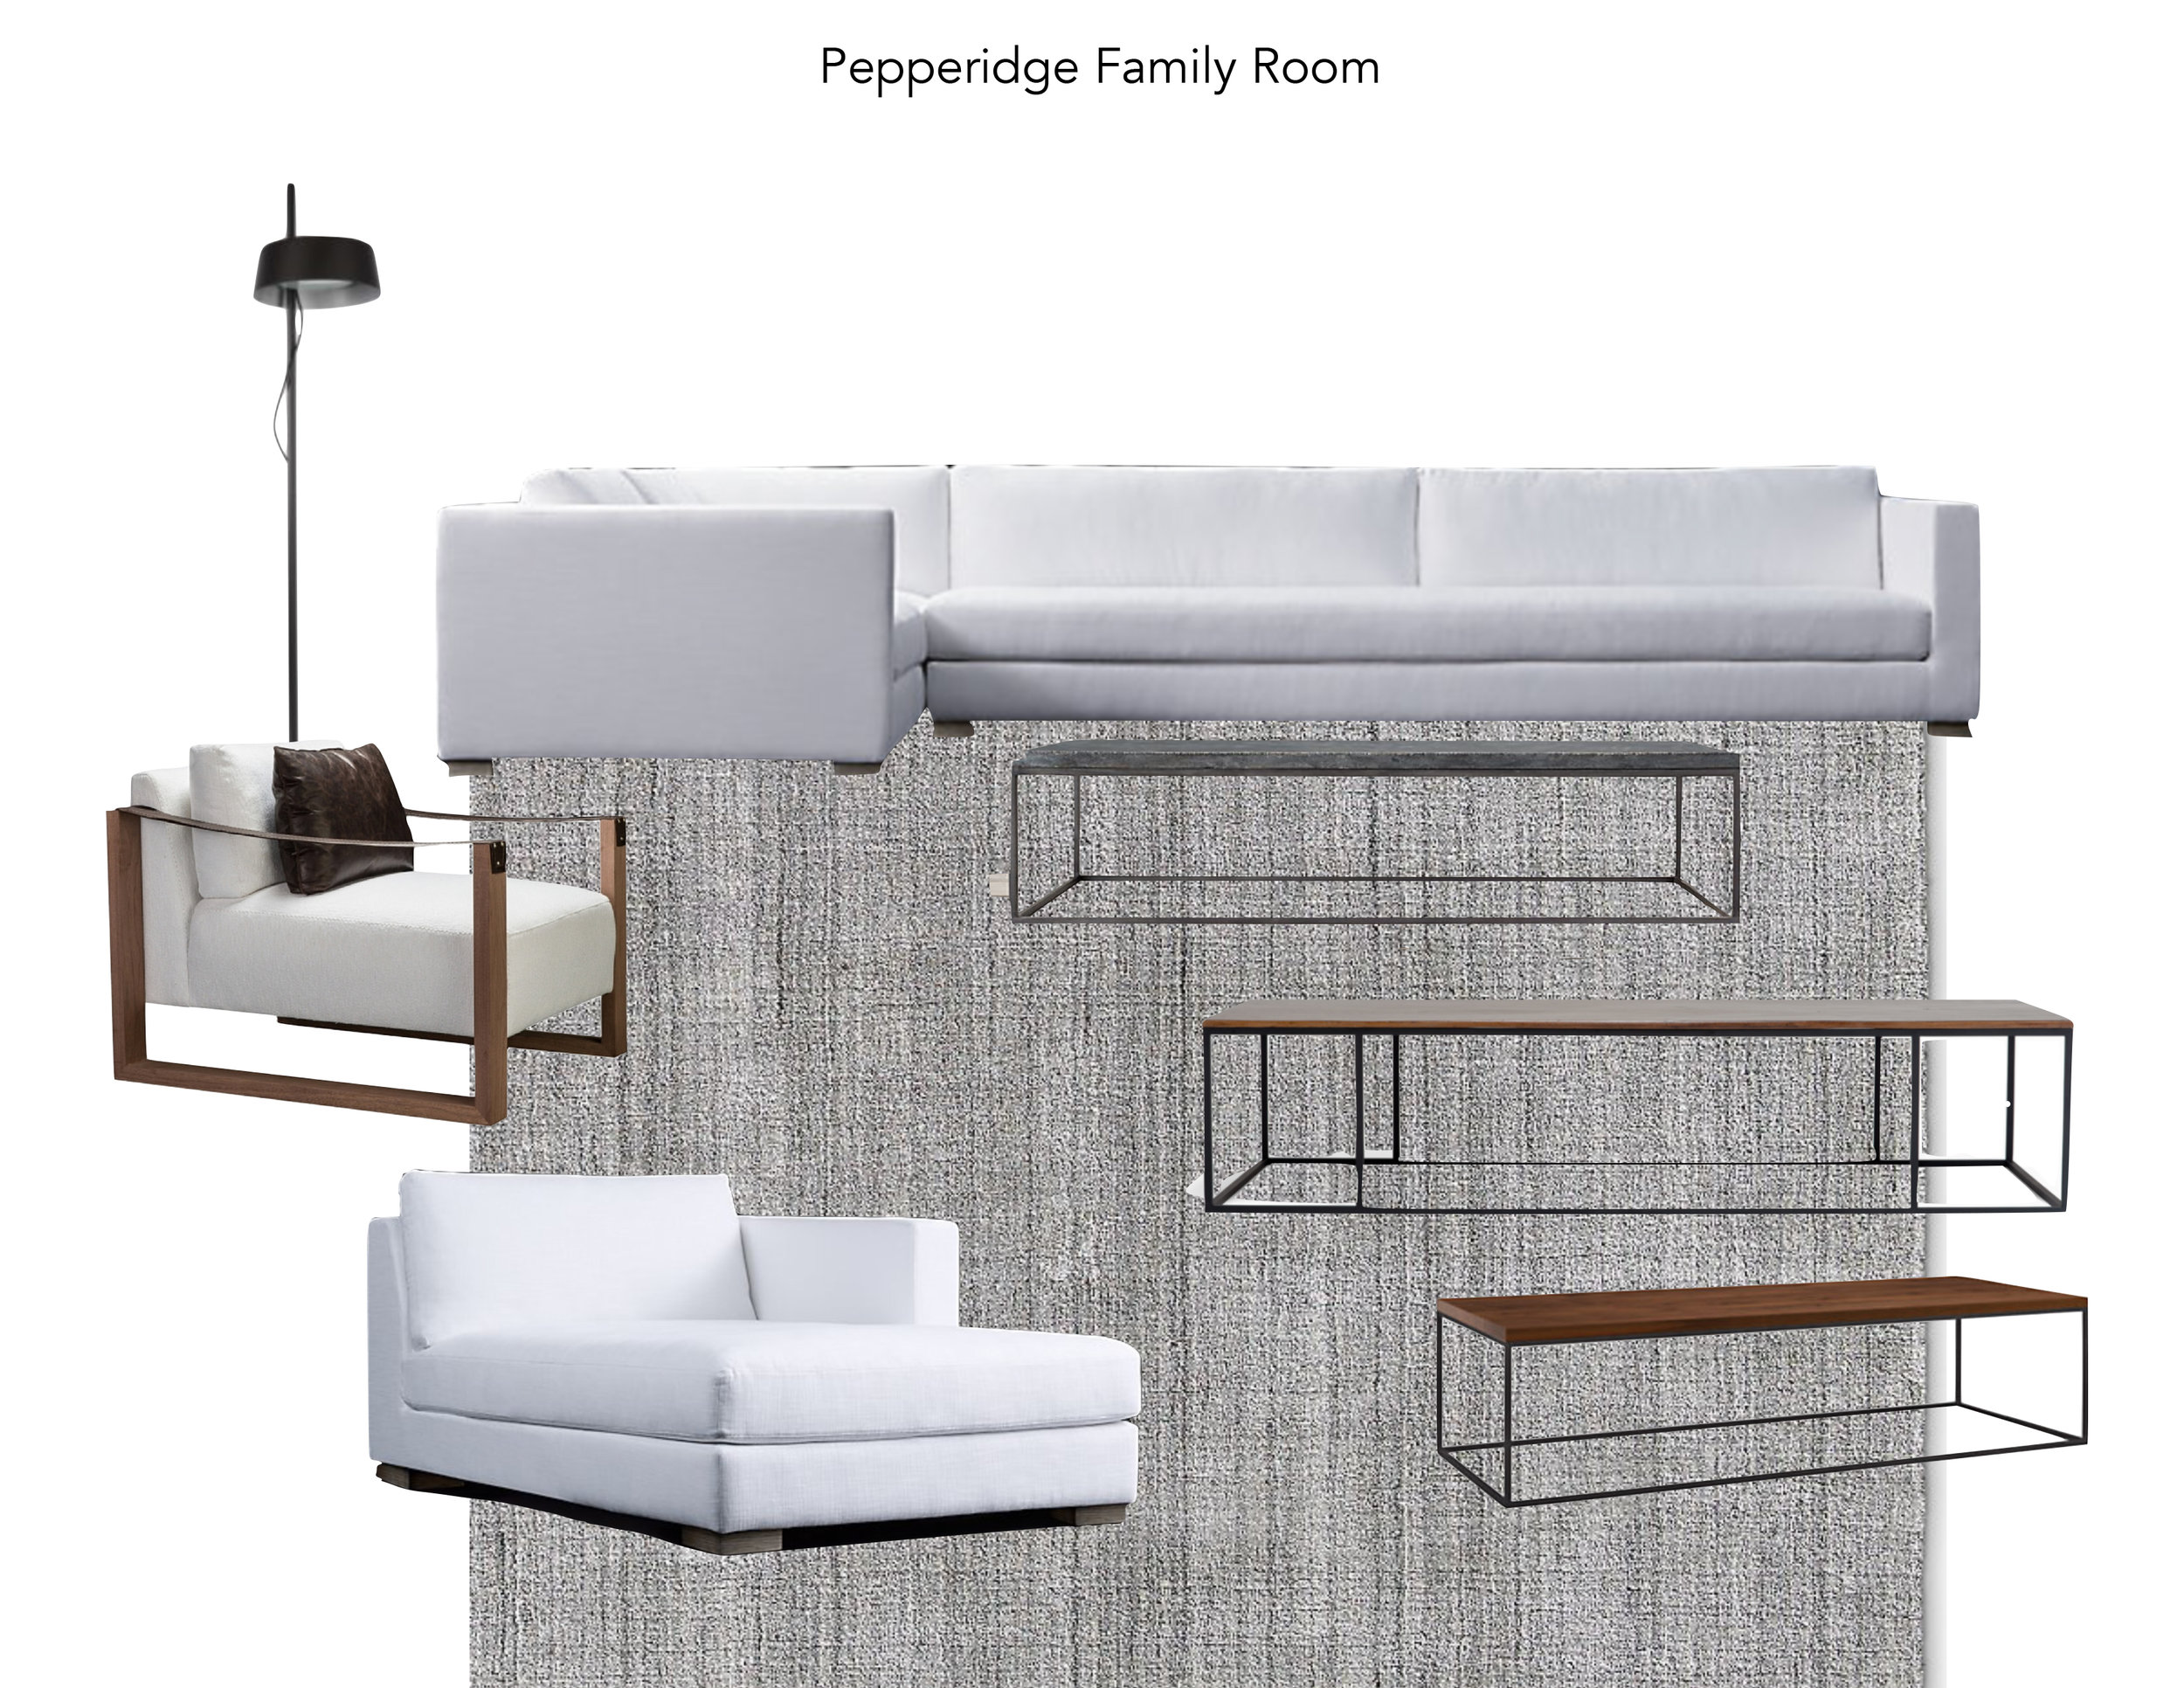 Pepperidge Family Room 7.32.11 PM.jpg